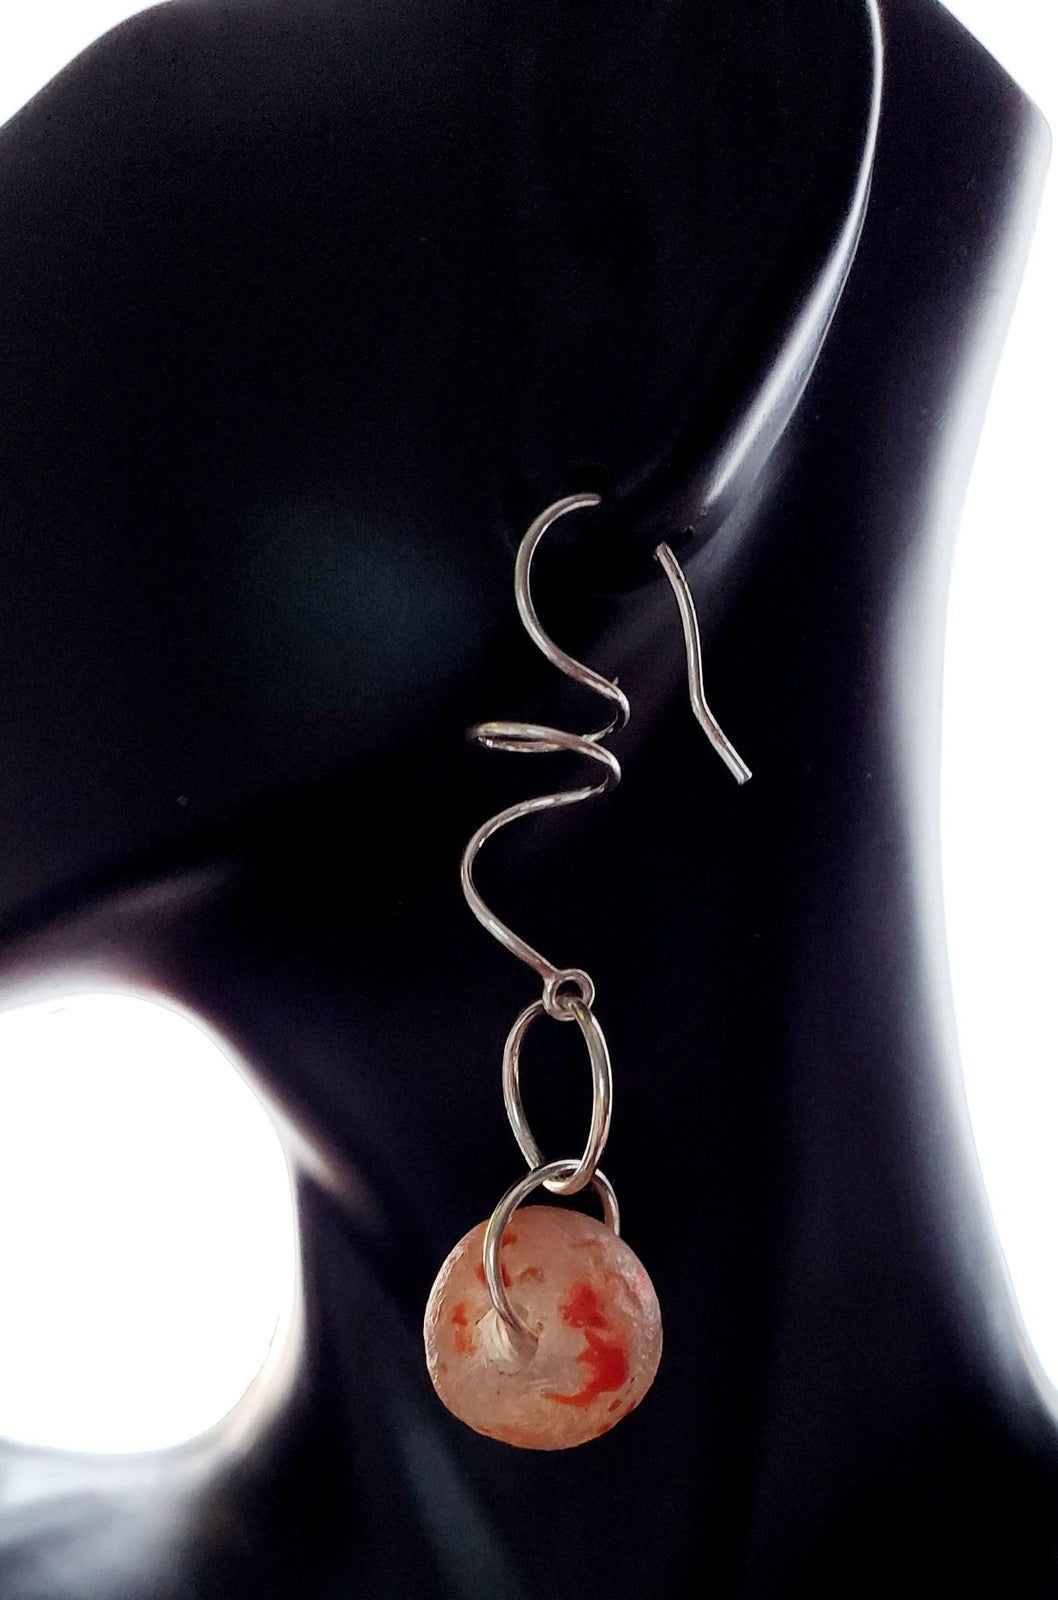 Orange earrings on bust, handmade earrings, earrings for women, earrings by Jiana Deon, Vashi Dangle Earrings